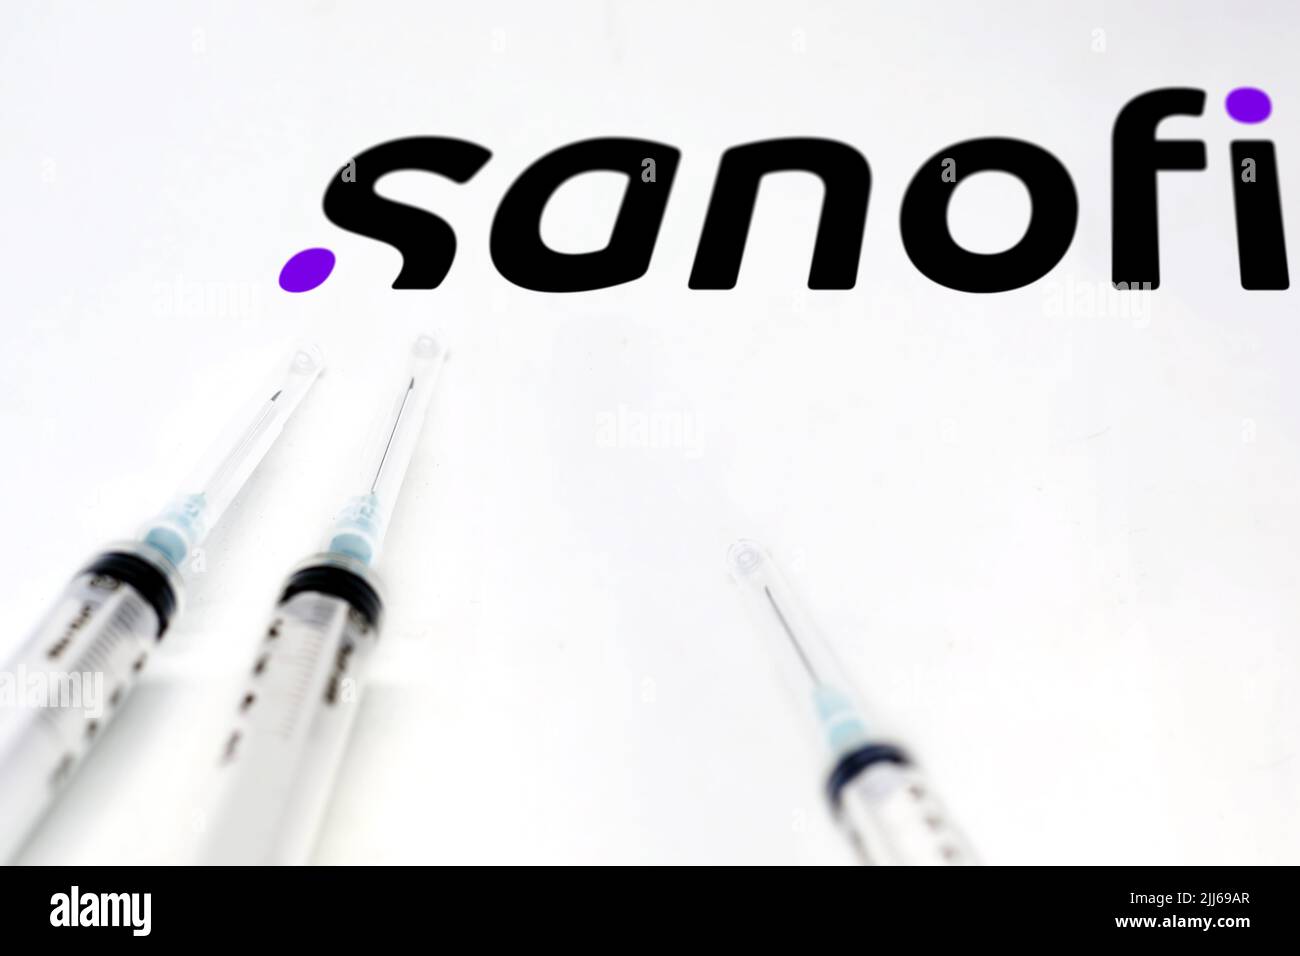 Paris, France, juillet 2022 : deux seringues sur une surface blanche avec le logo Sanofi en arrière-plan. Sanofi est une multinationale pharmaceutique française et Banque D'Images